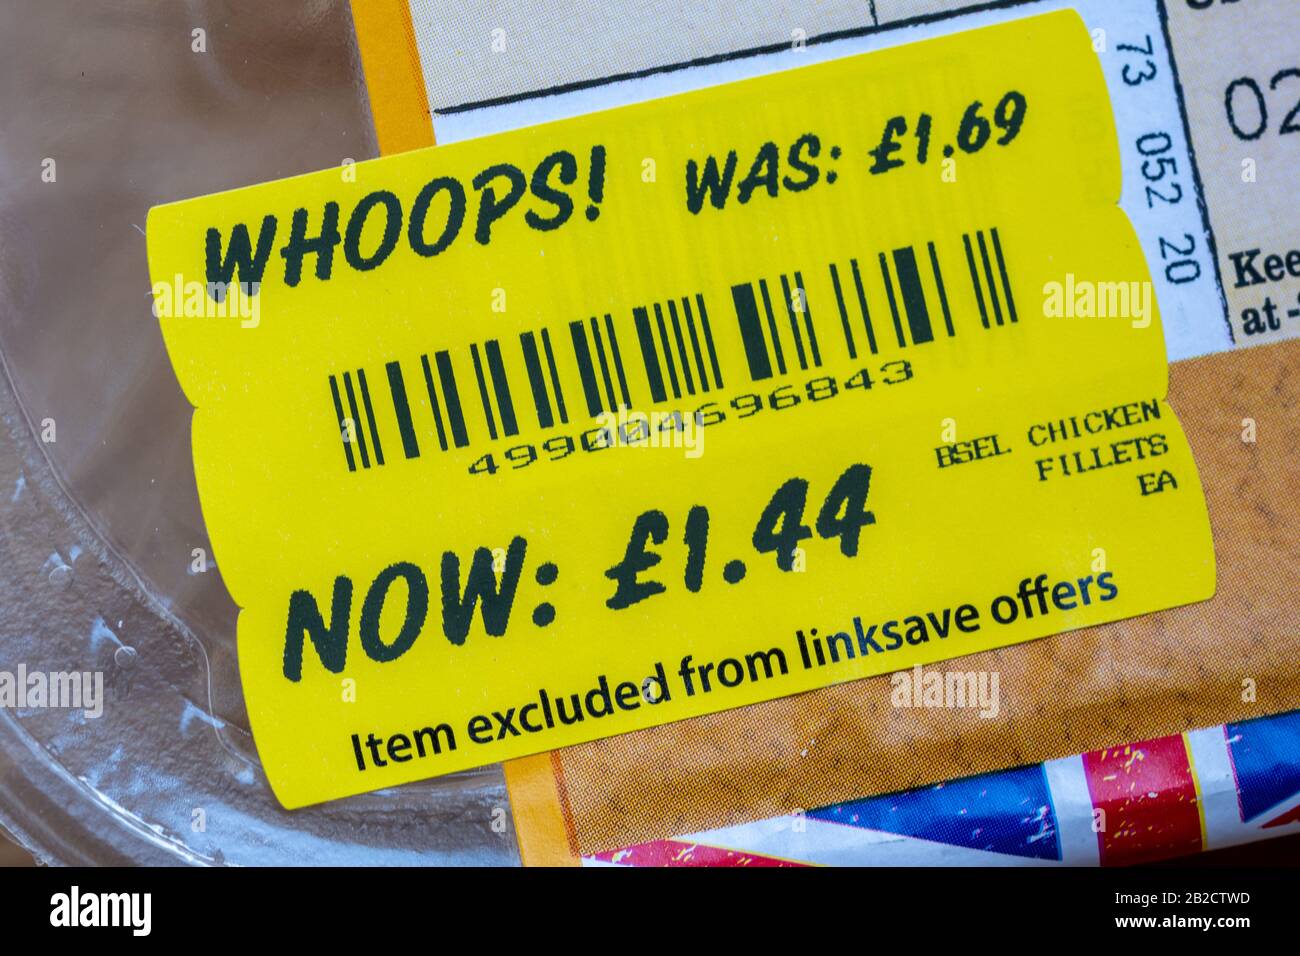 Preisreduzierte Lebensmittelkennzeichnung, gelbes Supermarktetikett auf Hühnerstückchen Stockfoto